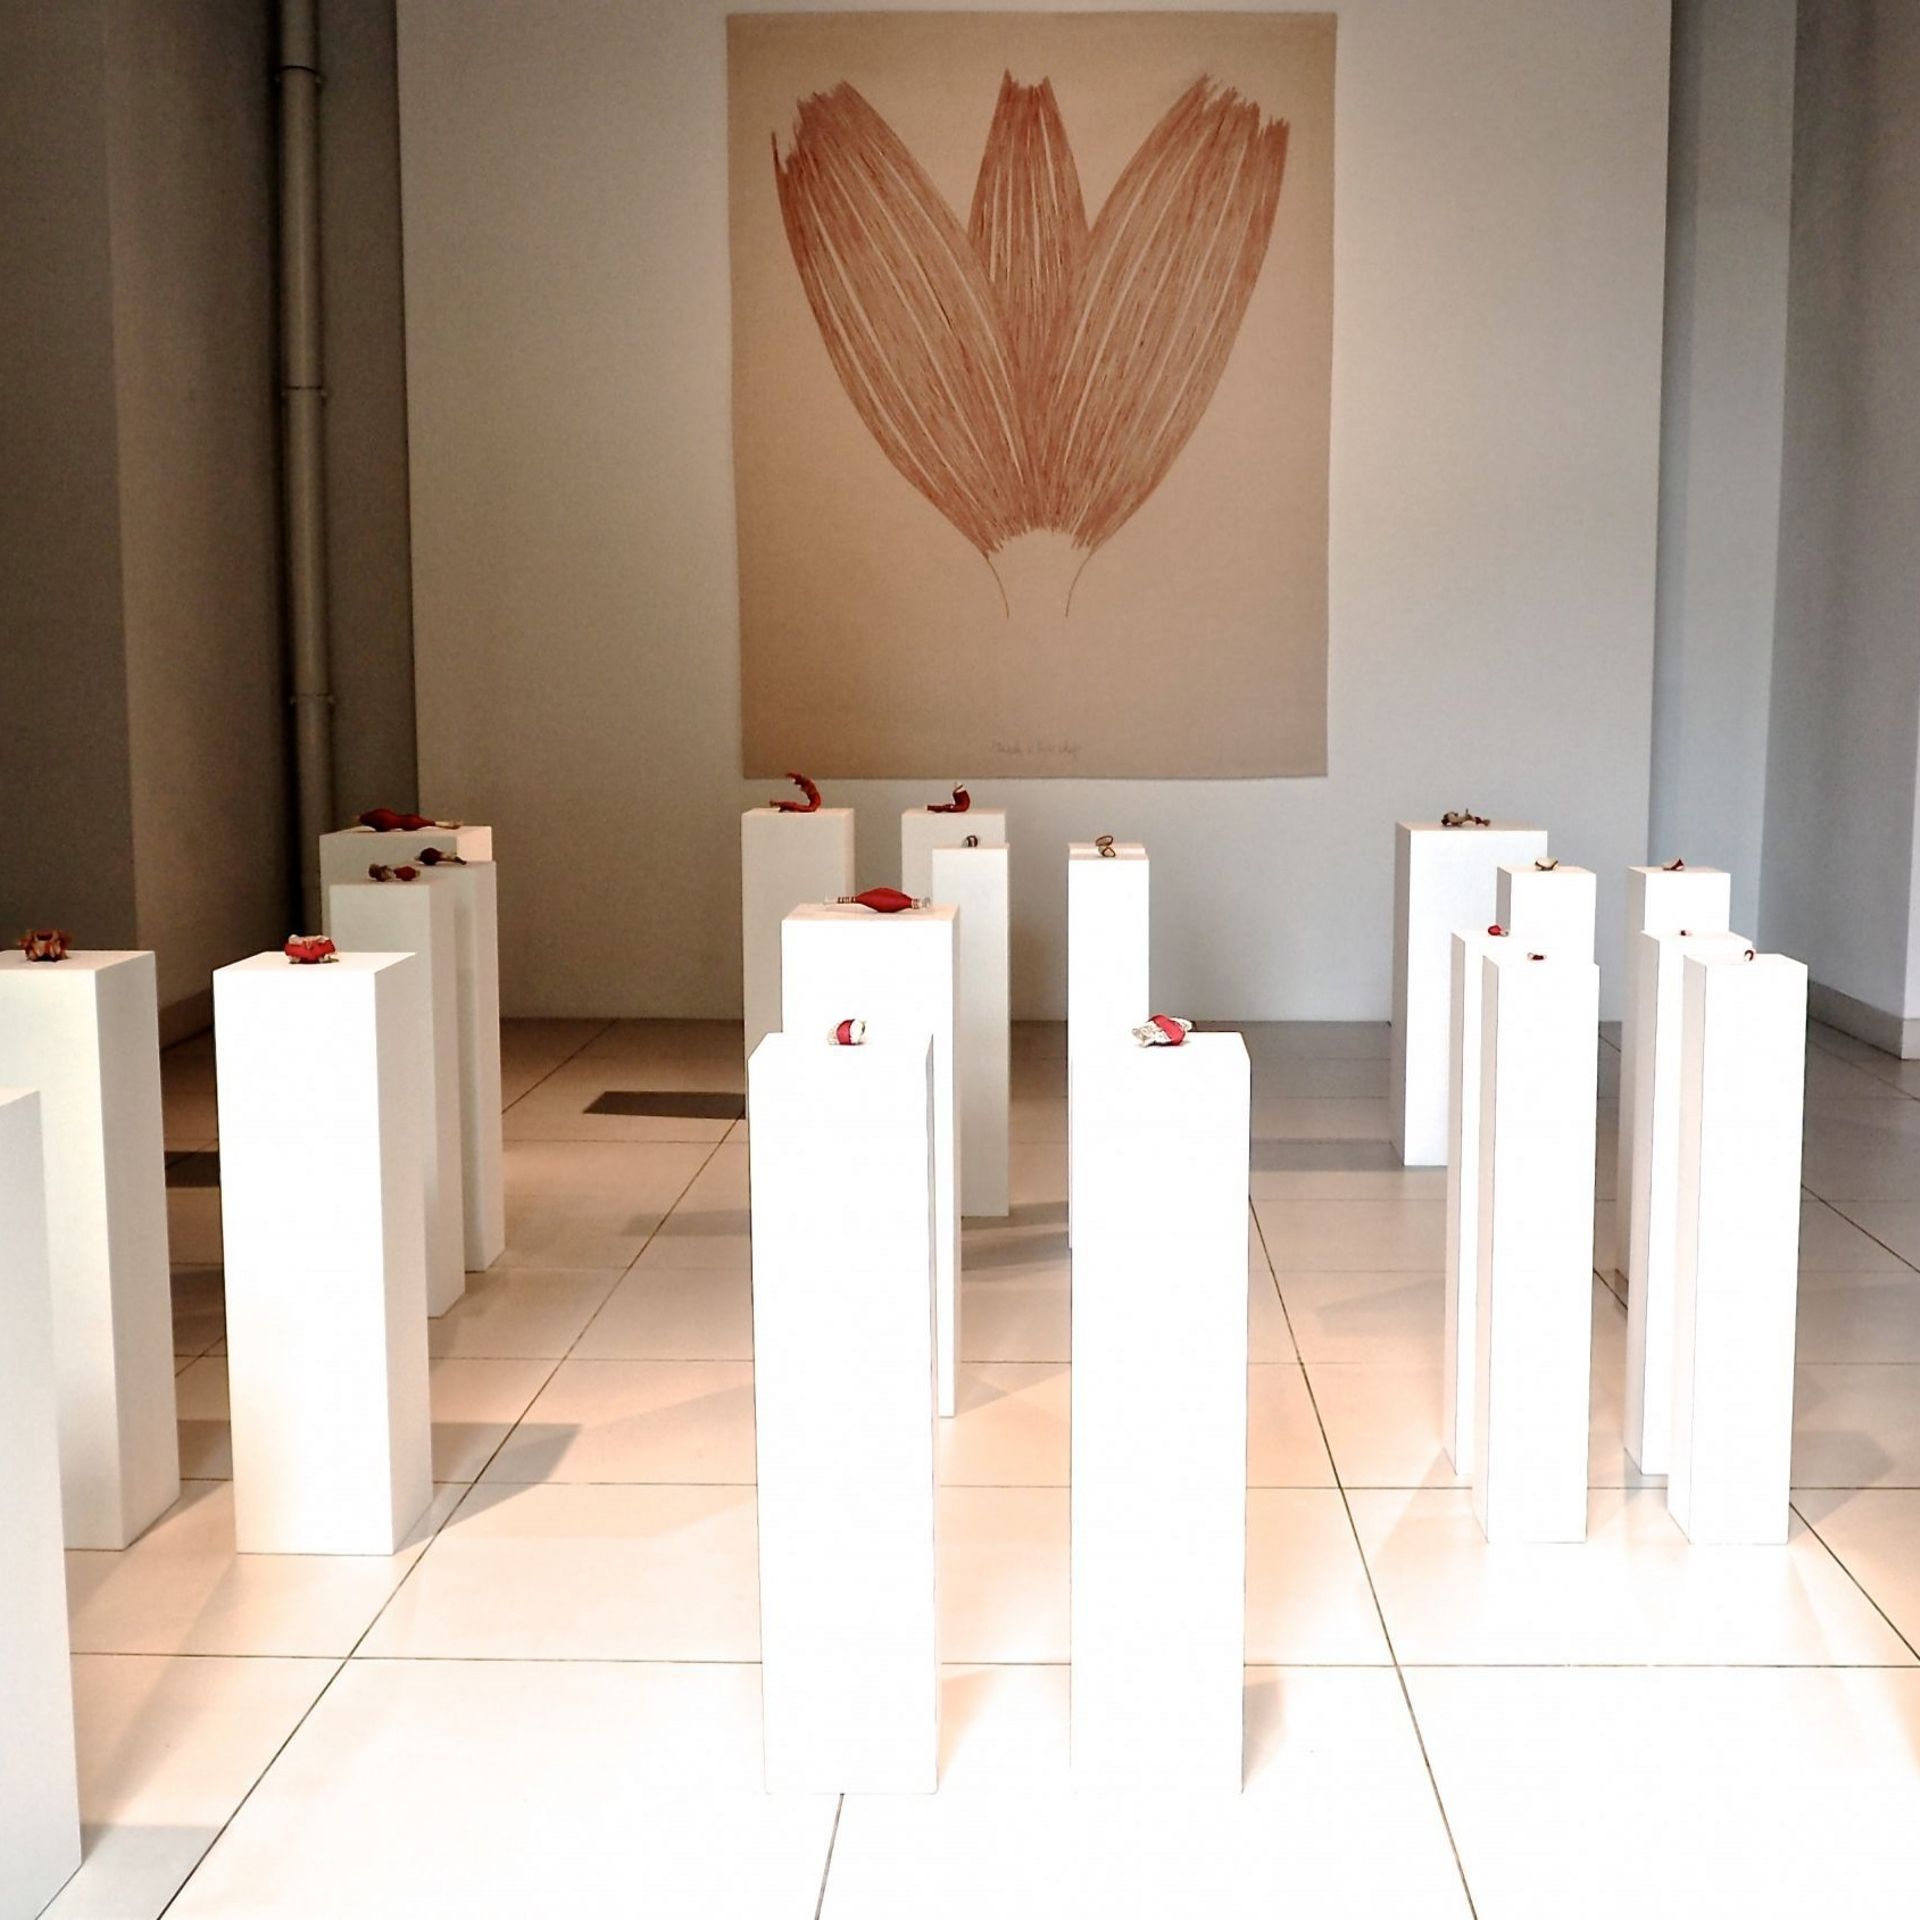 Vanité aux fleurs, Laurence Dervaux  2011  Installation Ensemble d’ossements humains, bobines de fil rouge